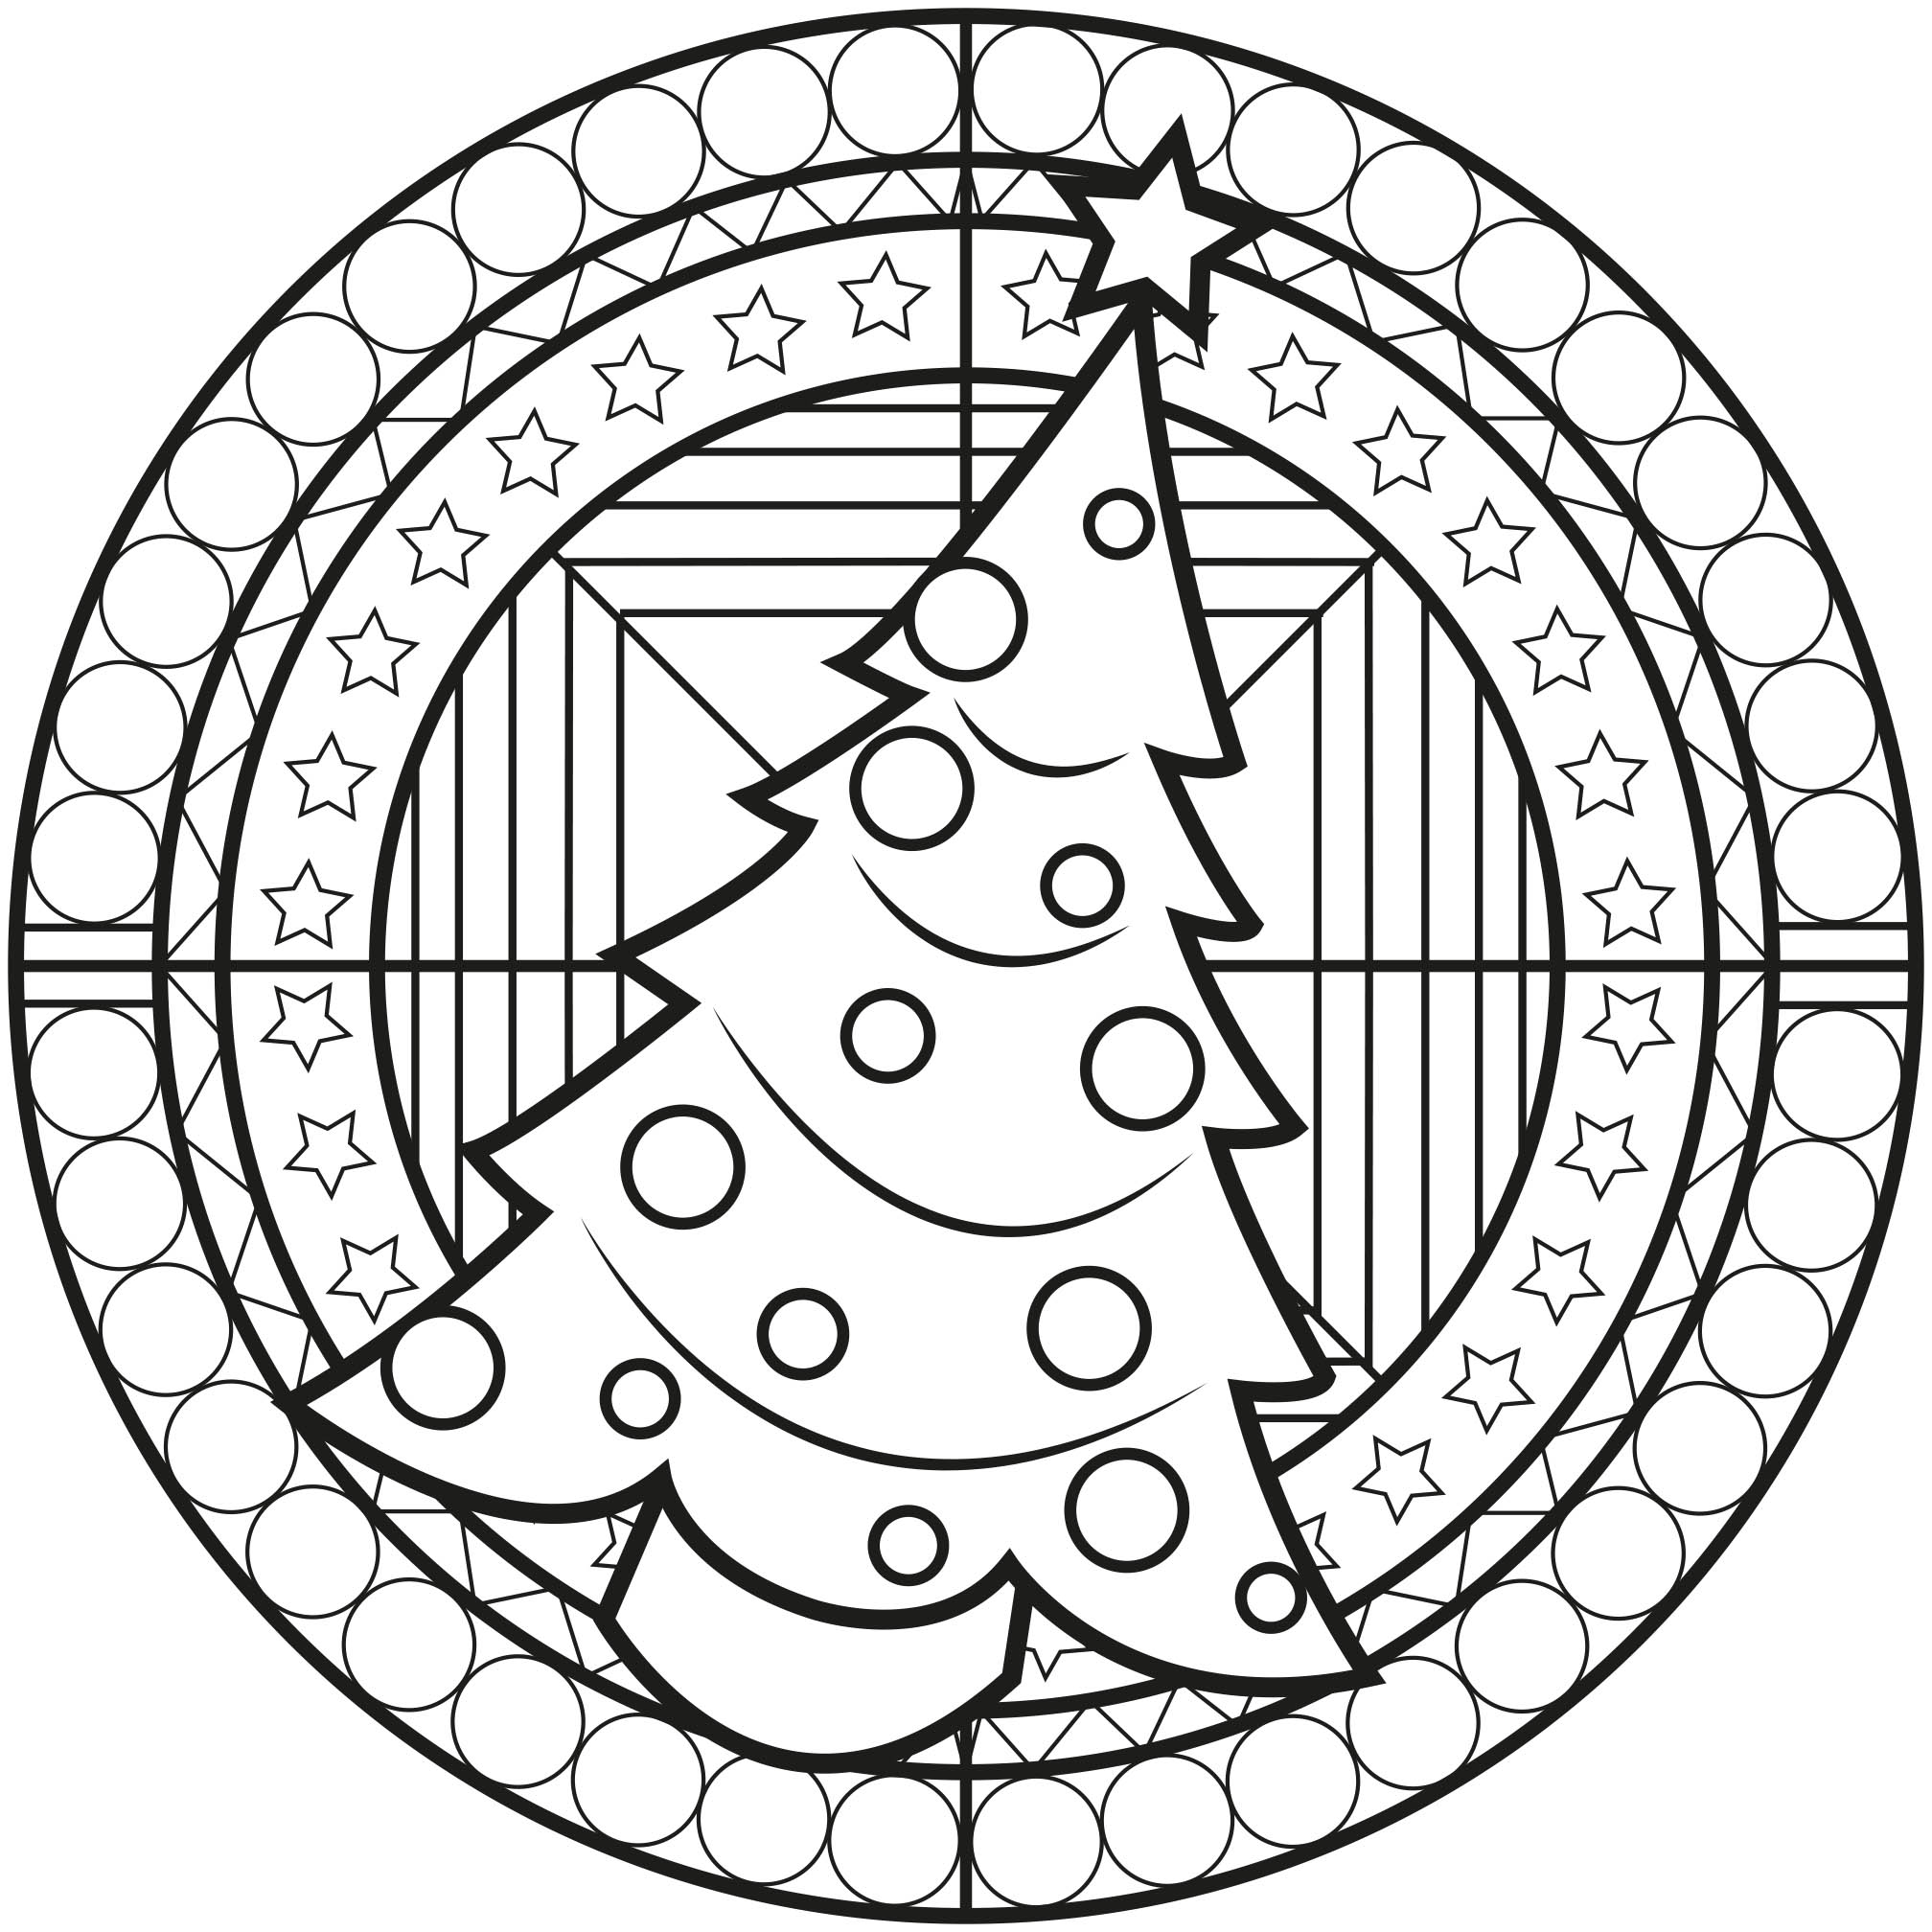 Árvore de Natal numa mandala, com motivos bonitos. Ideal para colorir para as crianças.